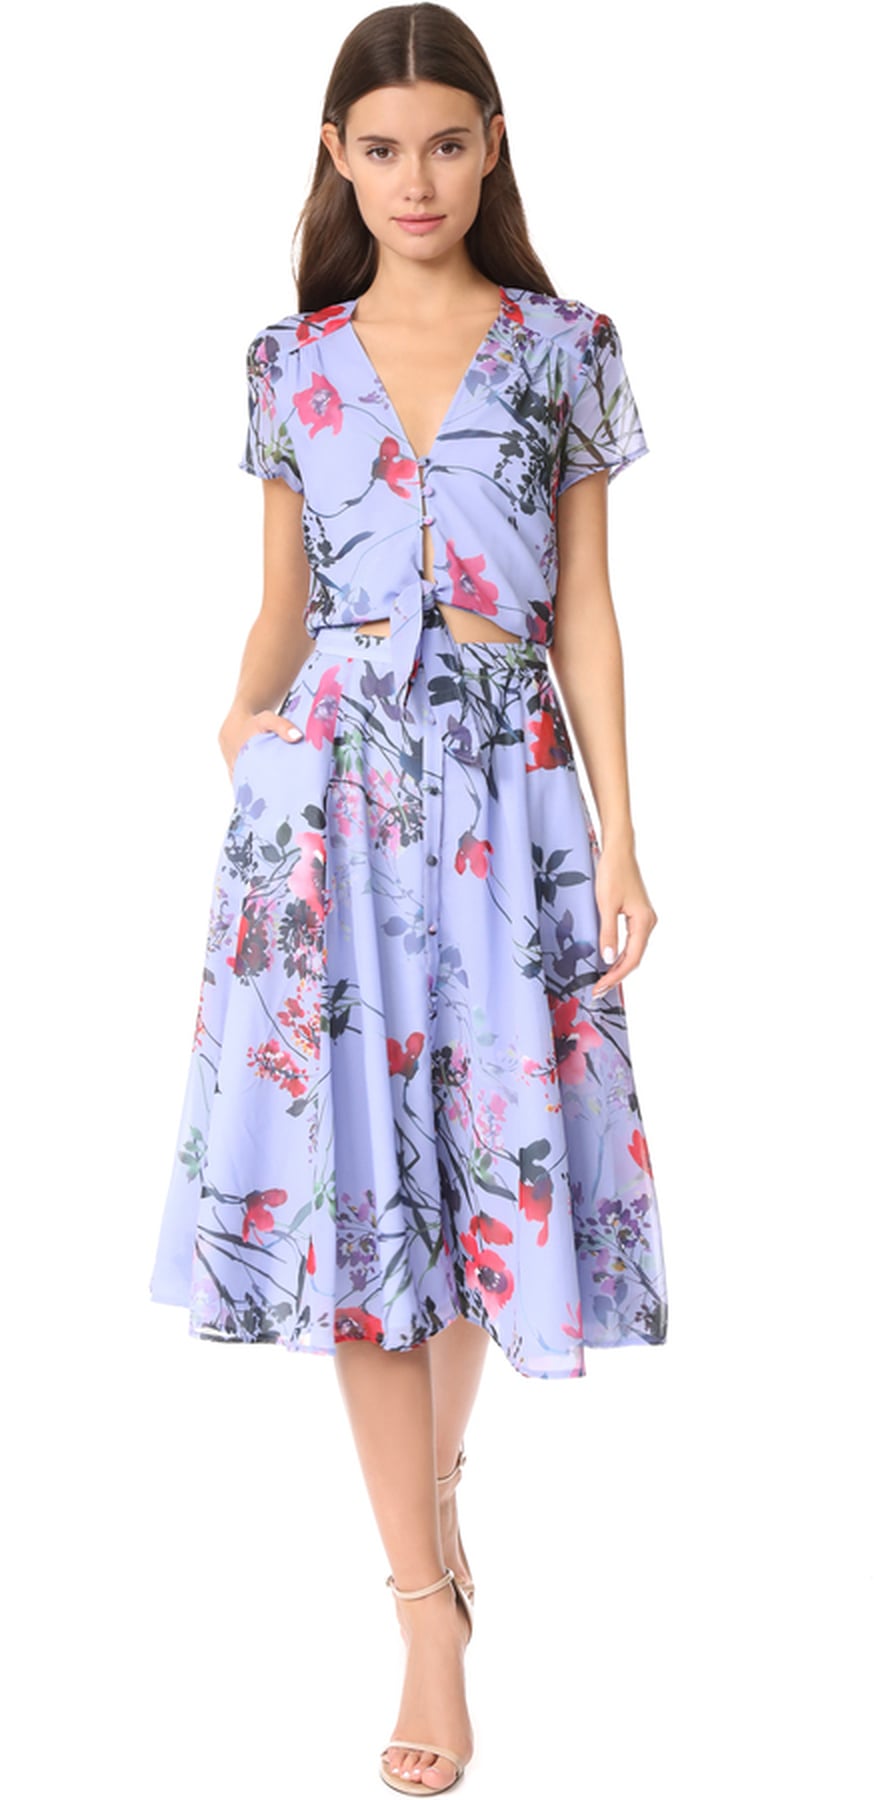 Selena Gomez's Blue Rouje Dress | POPSUGAR Fashion